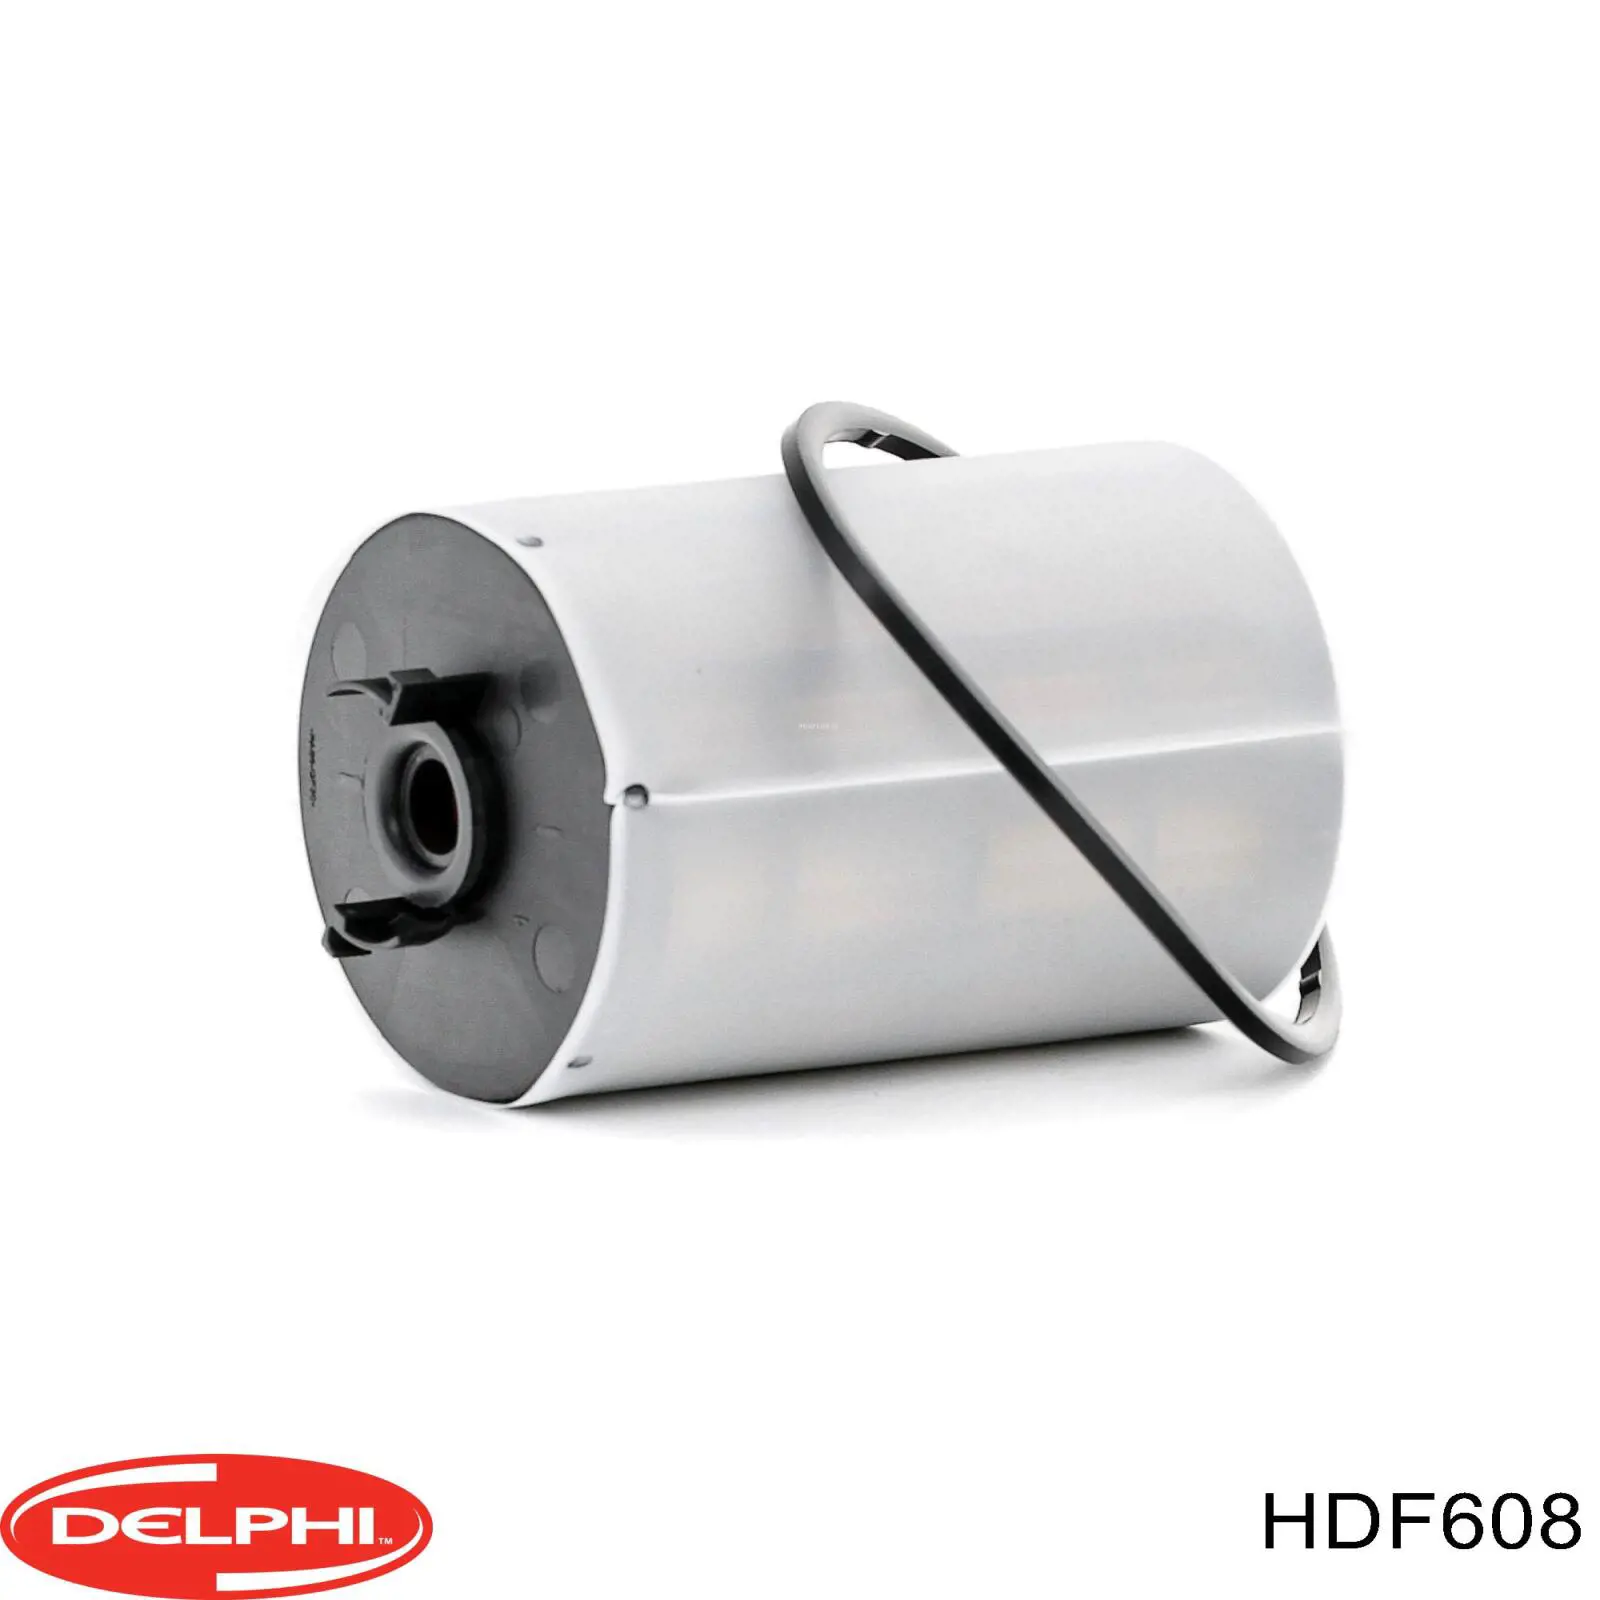 HDF608 Delphi filtro combustible